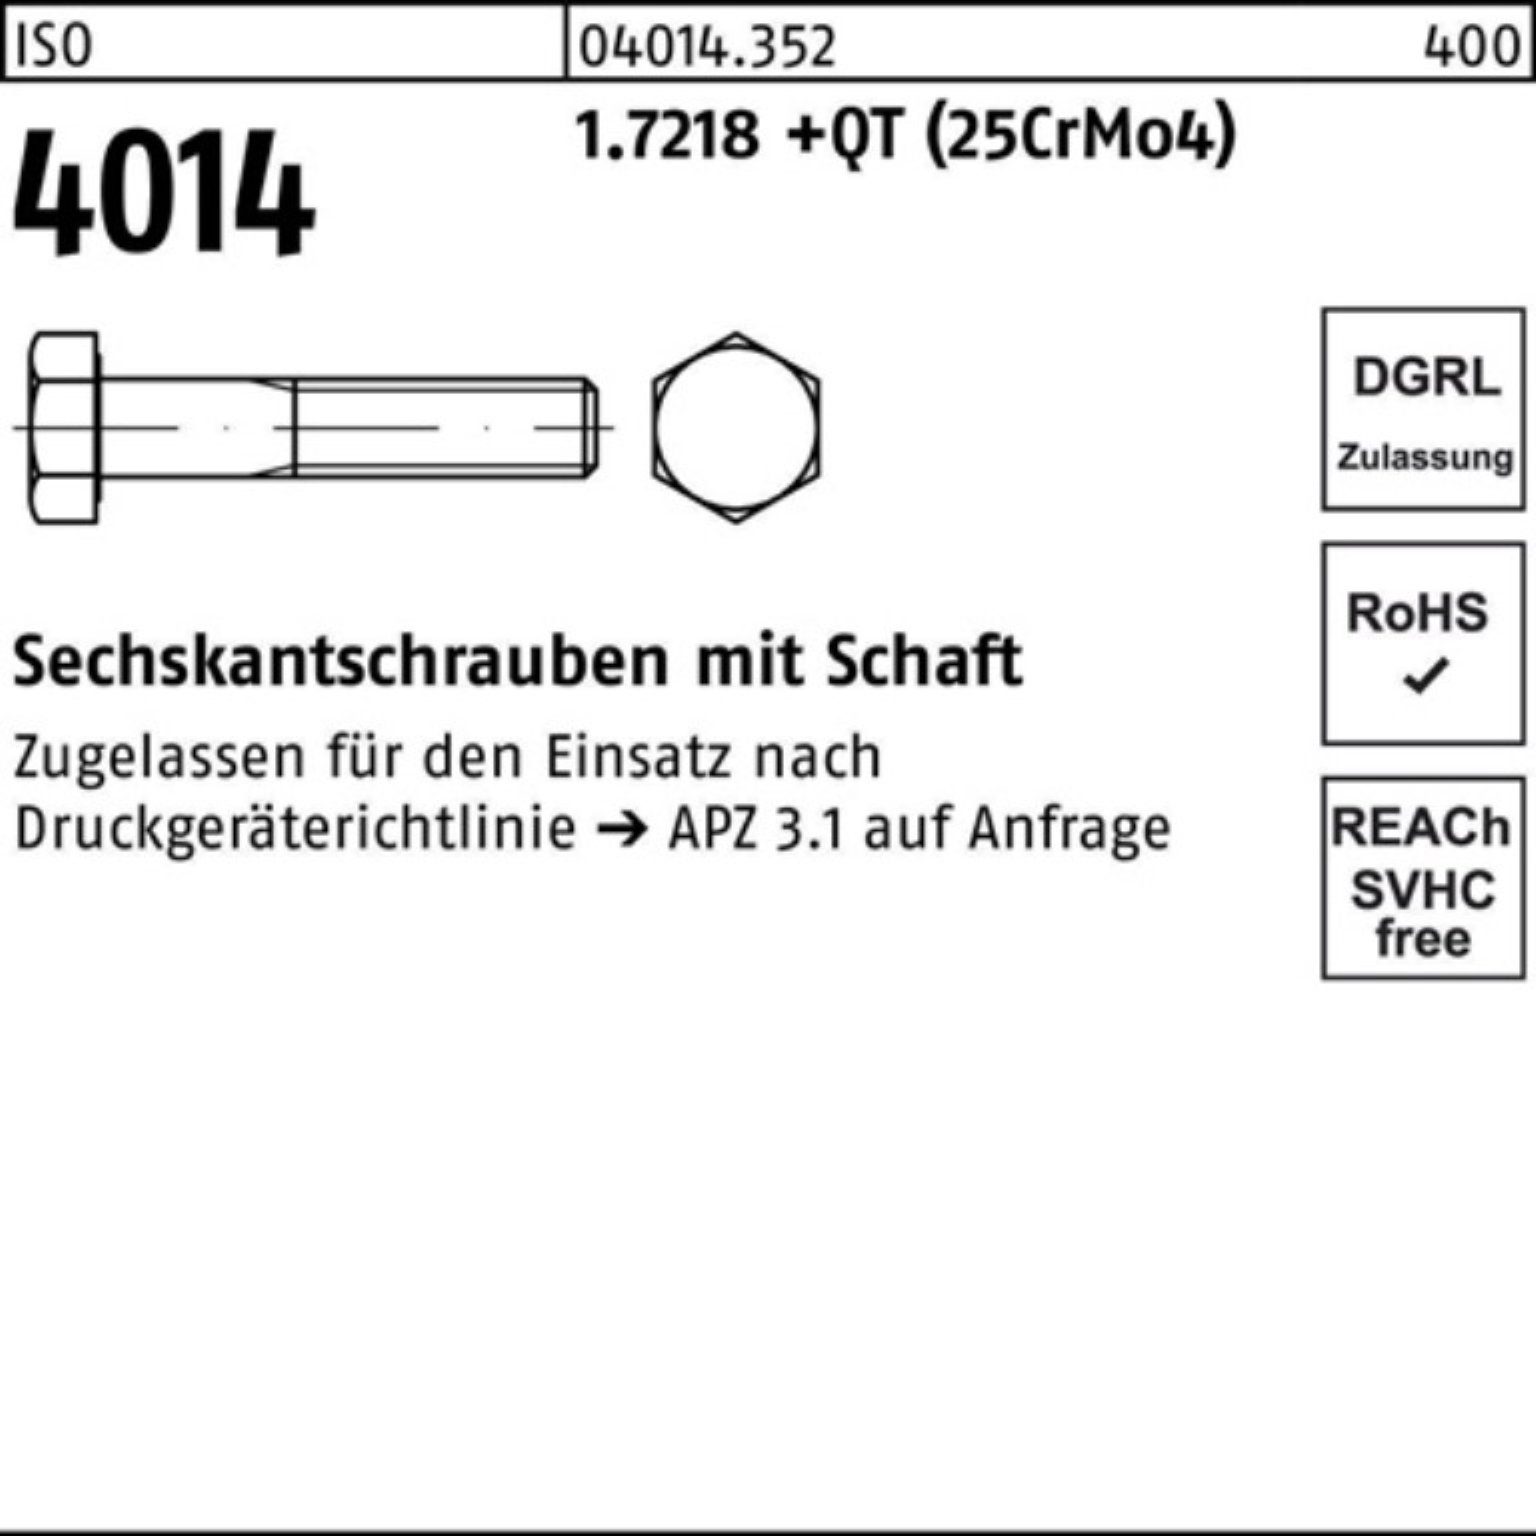 Schaft Bufab 100er Sechskantschraube ISO 4014 +QT Pack 190 Sechskantschraube (25Cr 1.7218 M30x